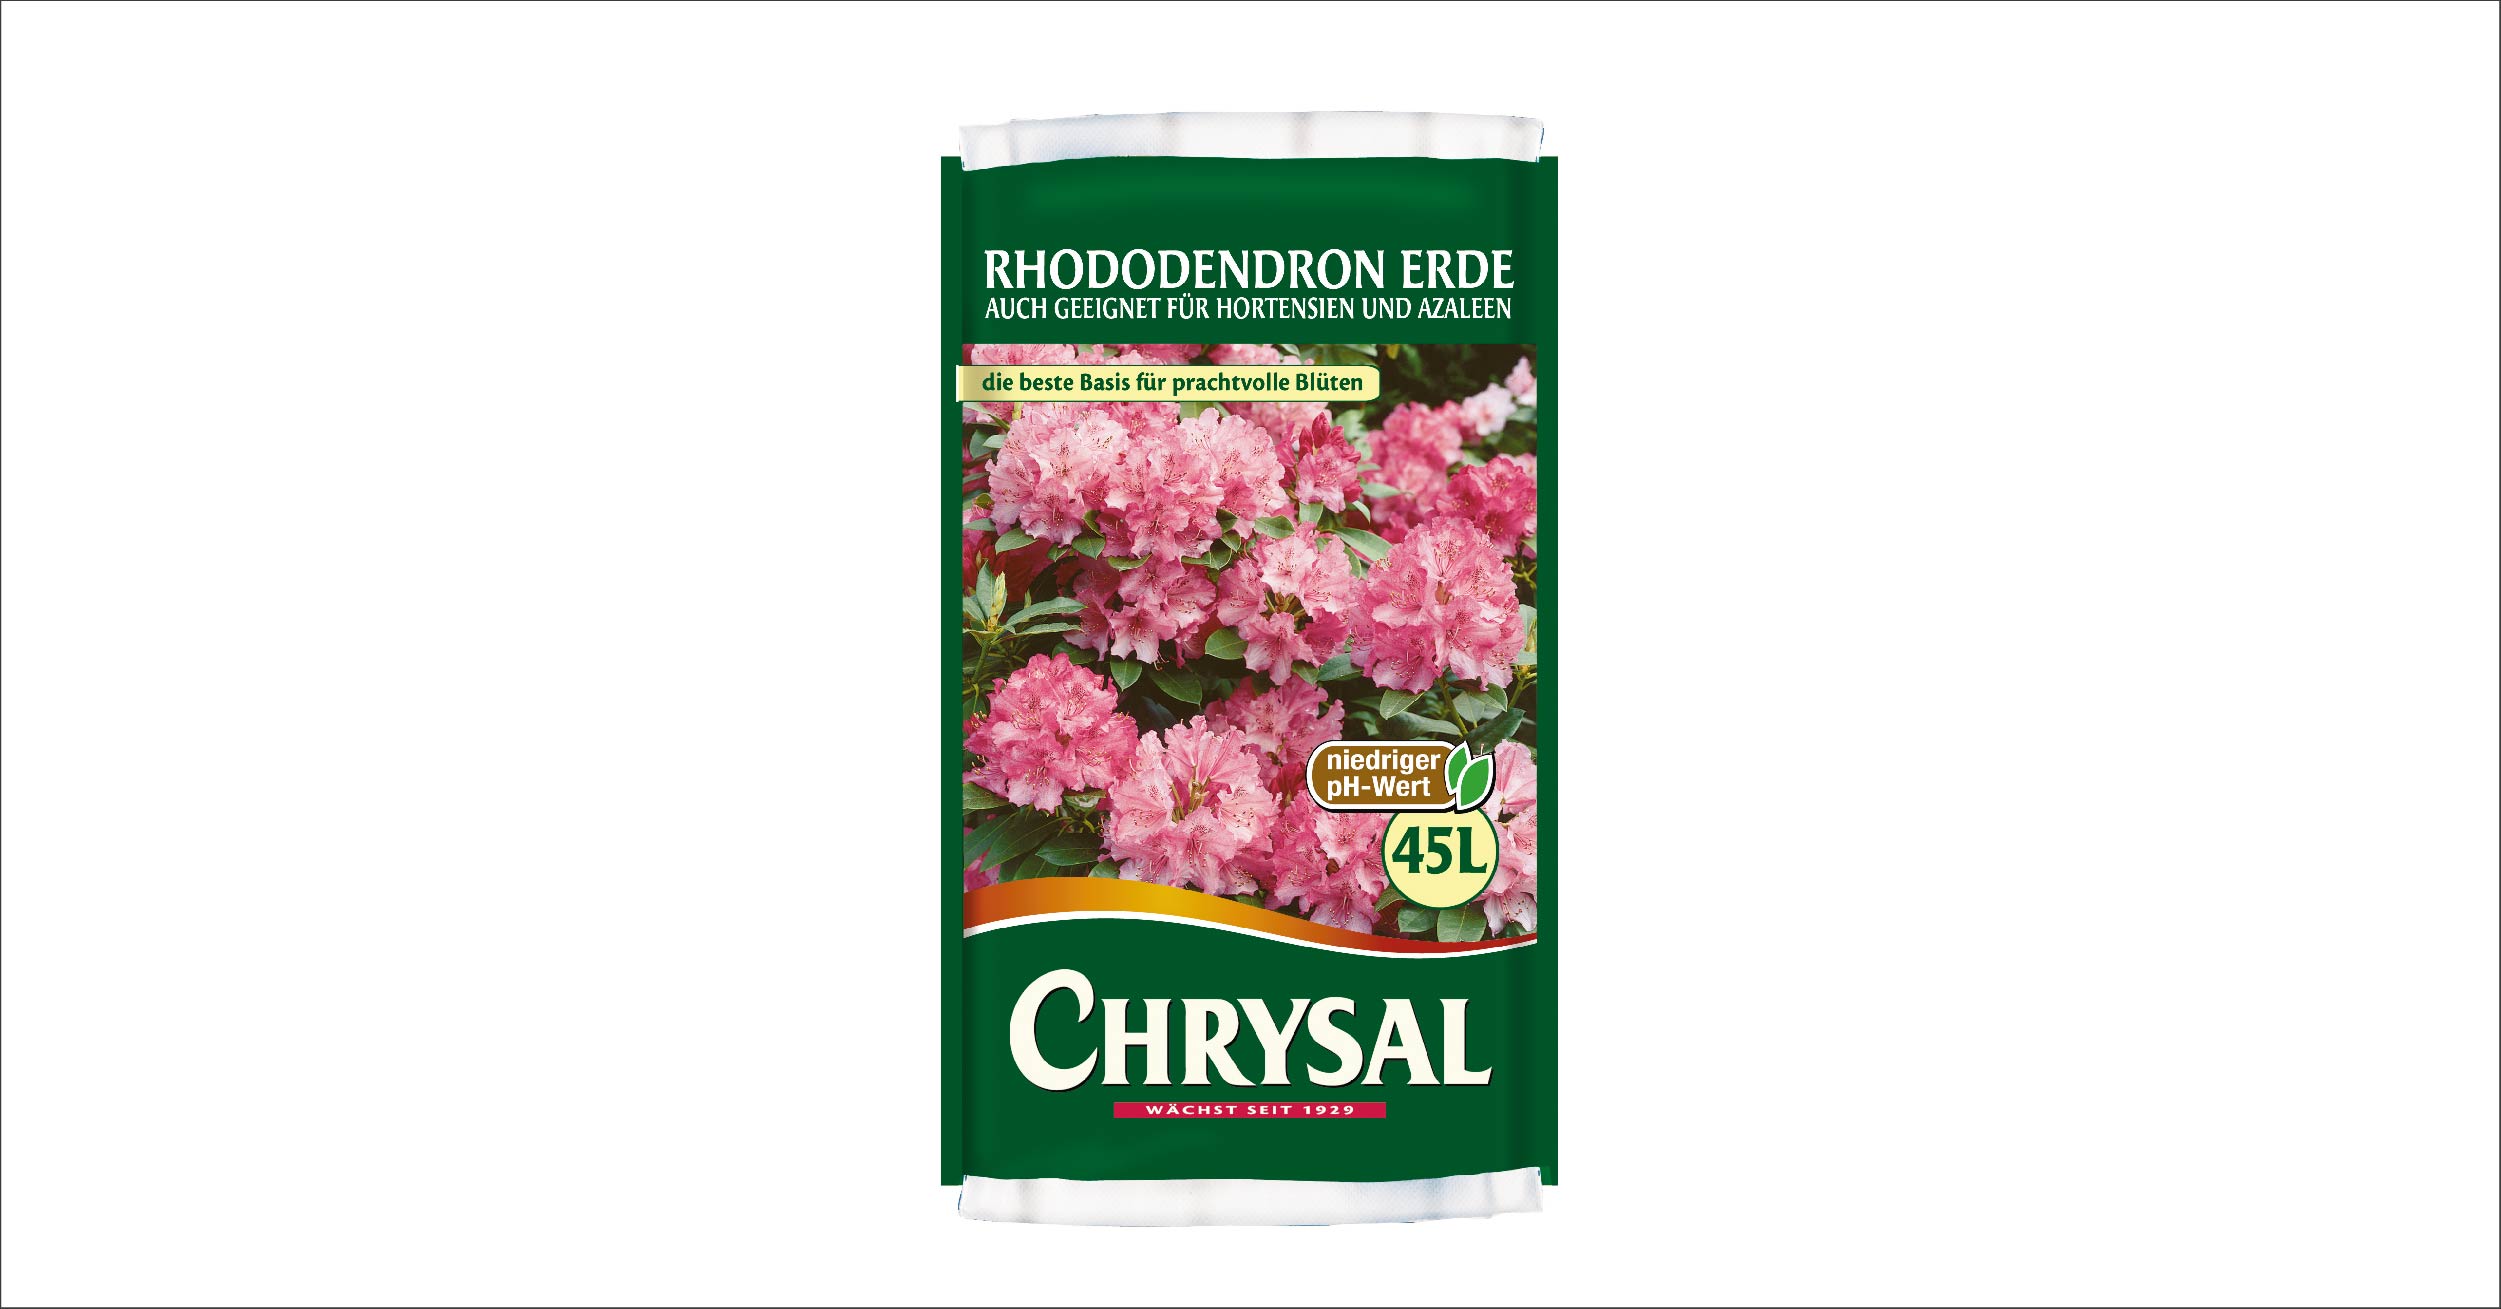 Chrysal Rhododendron Erde